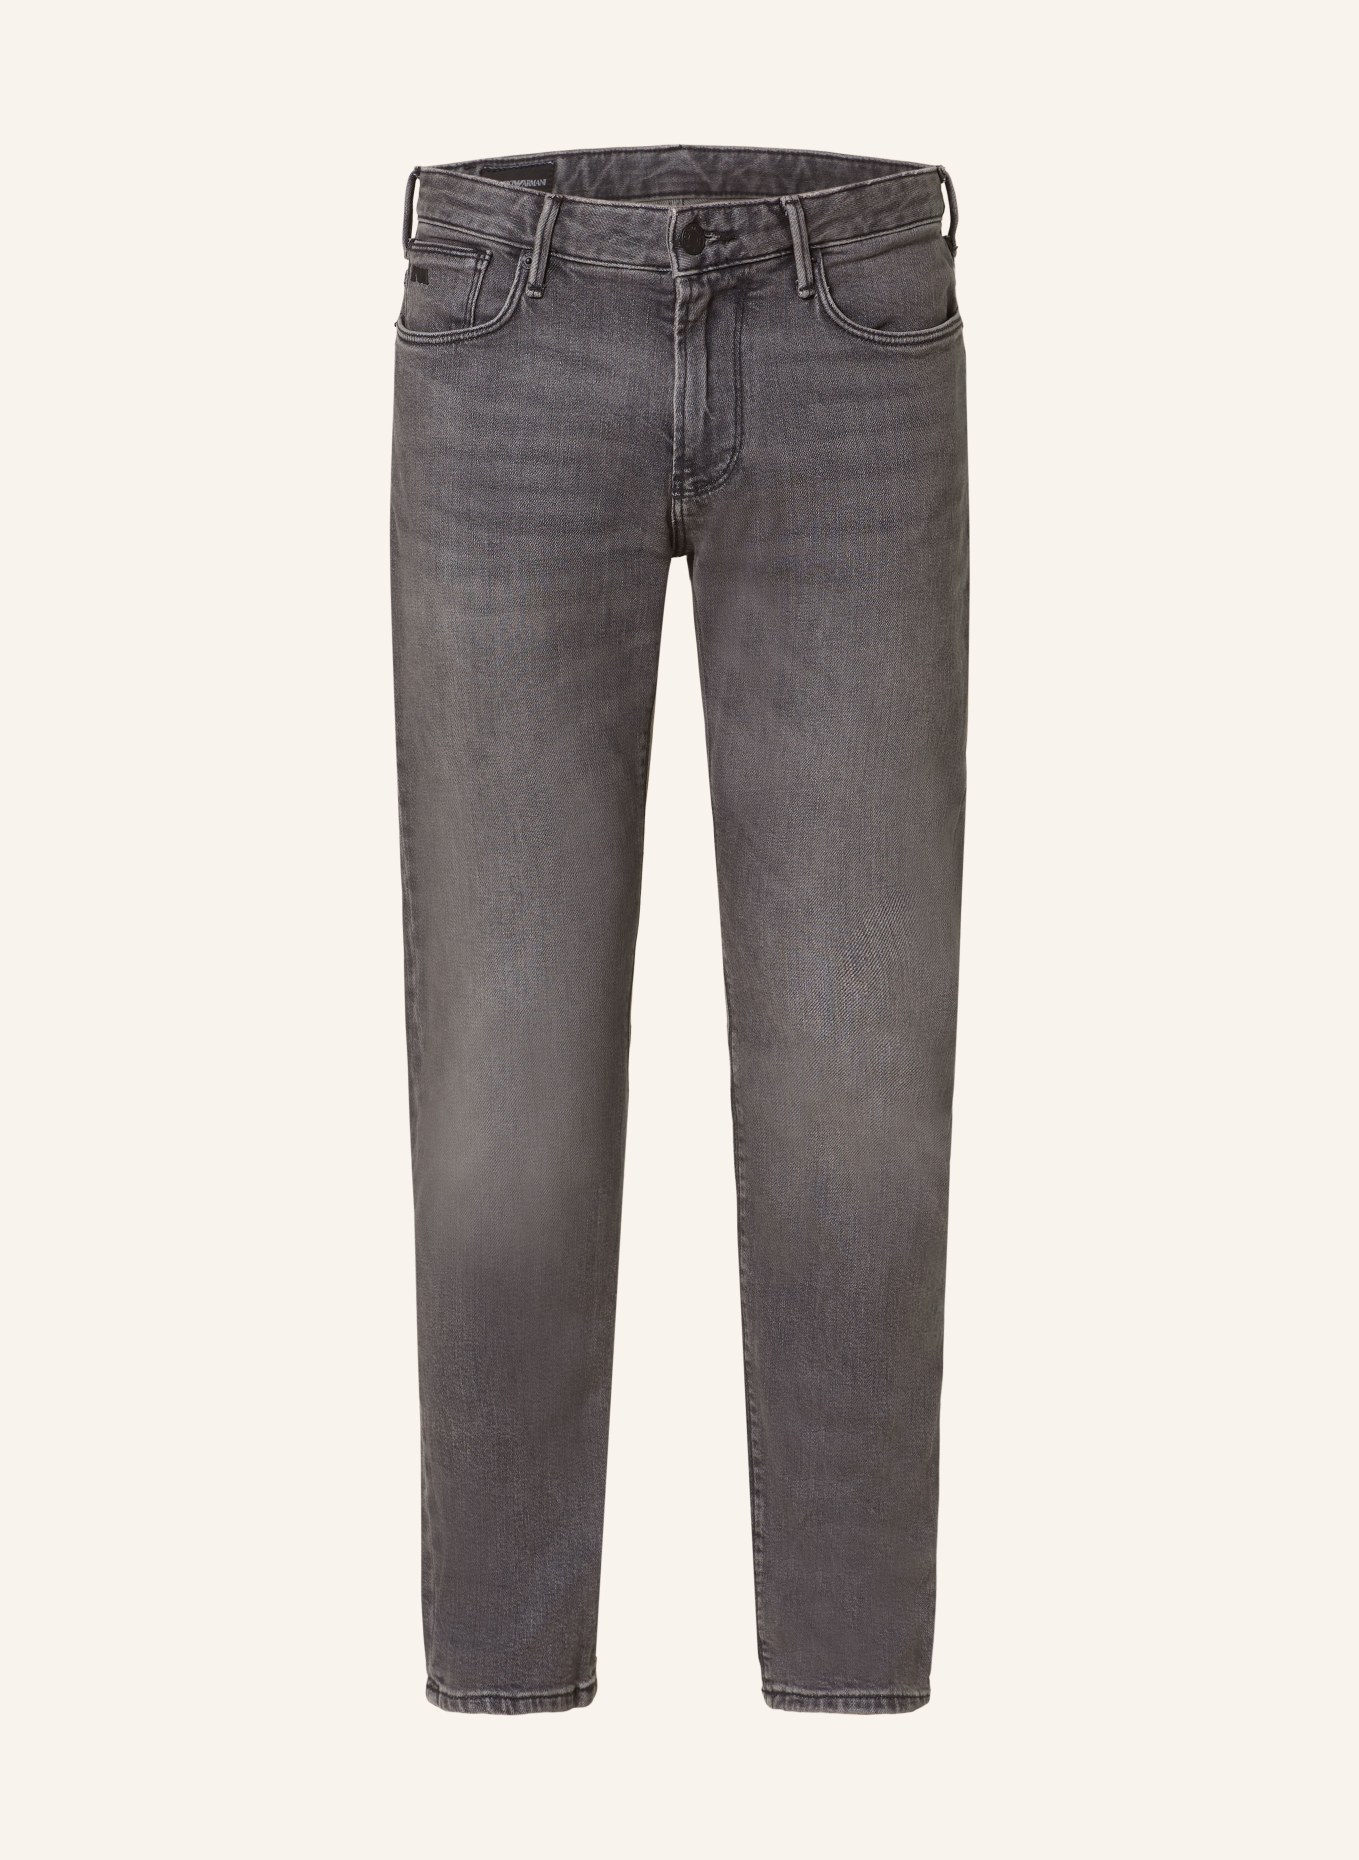 EMPORIO ARMANI Jeans Slim Fit, Farbe: 0006 DENIM NERO MD (Bild 1)